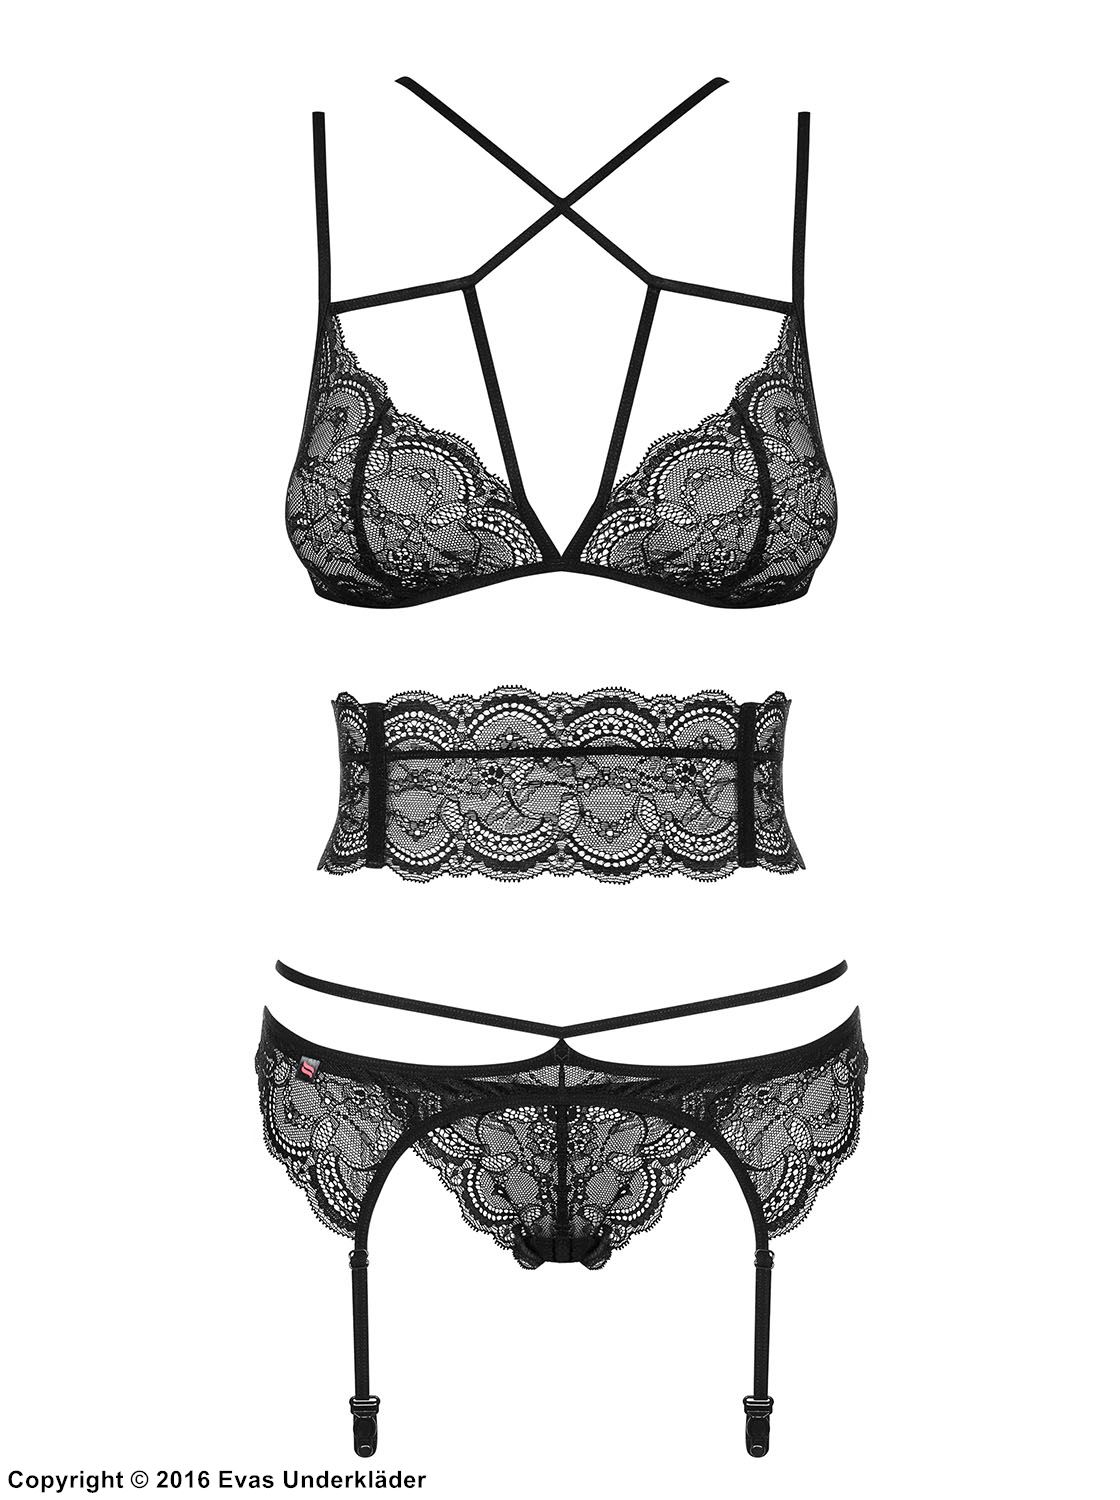 Seductive lingerie set, lace, crossing straps, belt